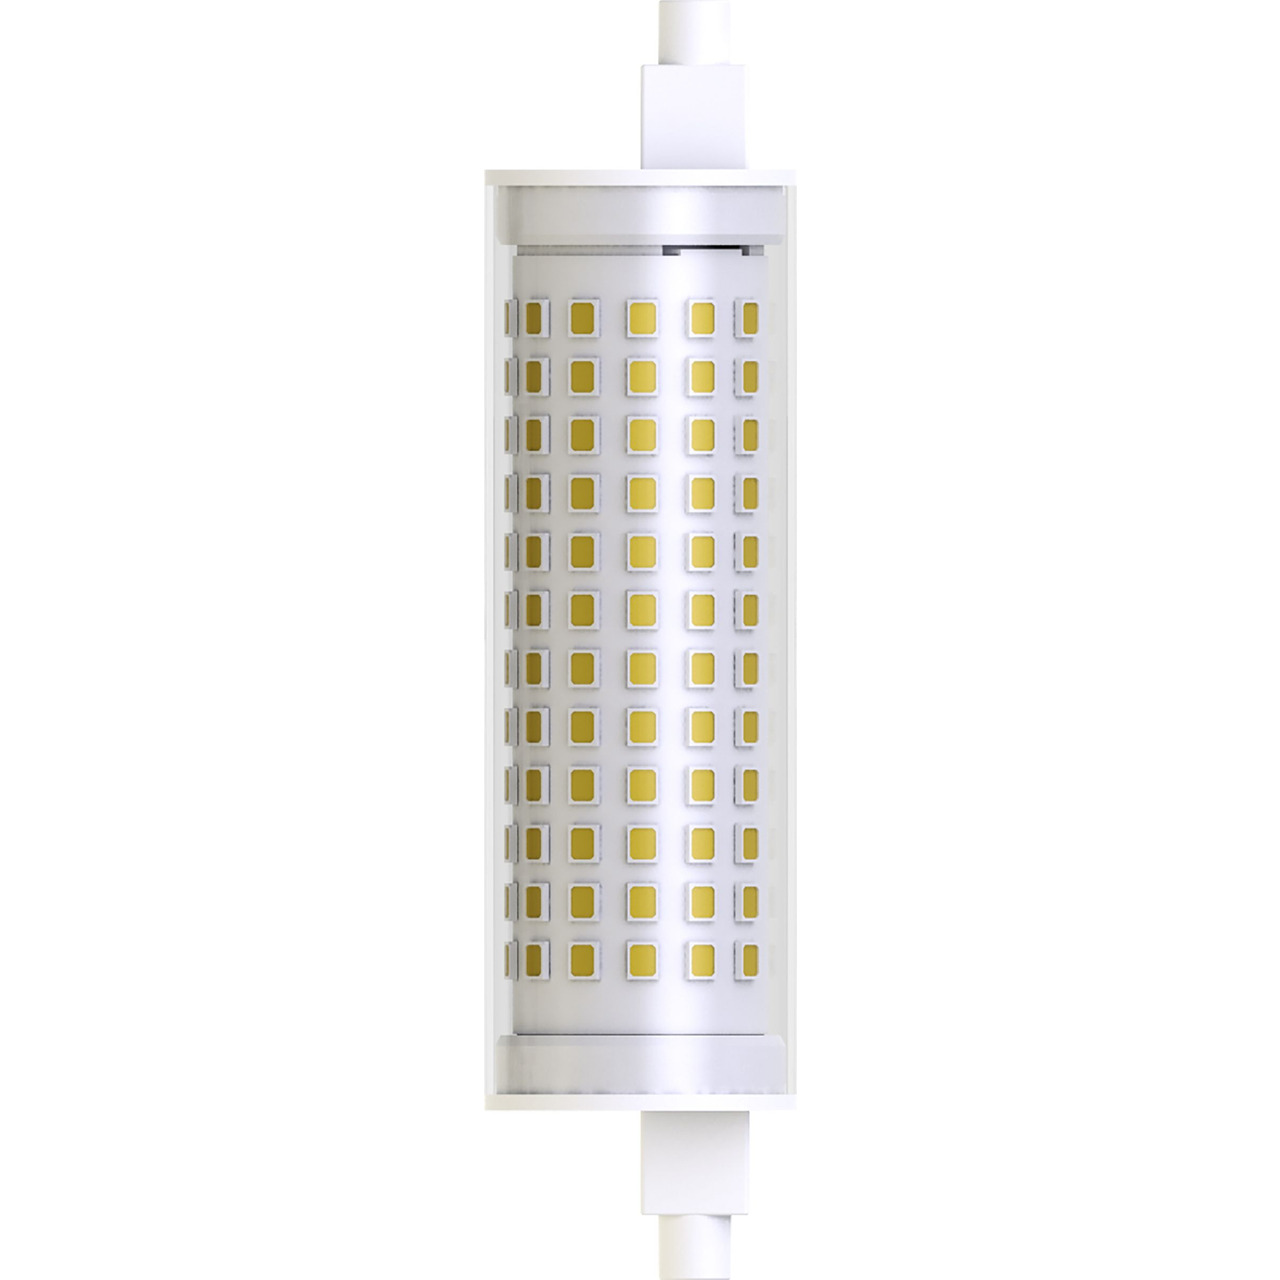 Blulaxa 19-W-LED-Lampe- R7s- 2452 lm- warmweiss- 2700 K- 129 lm-W- versetzter Sockel- - 28 mm